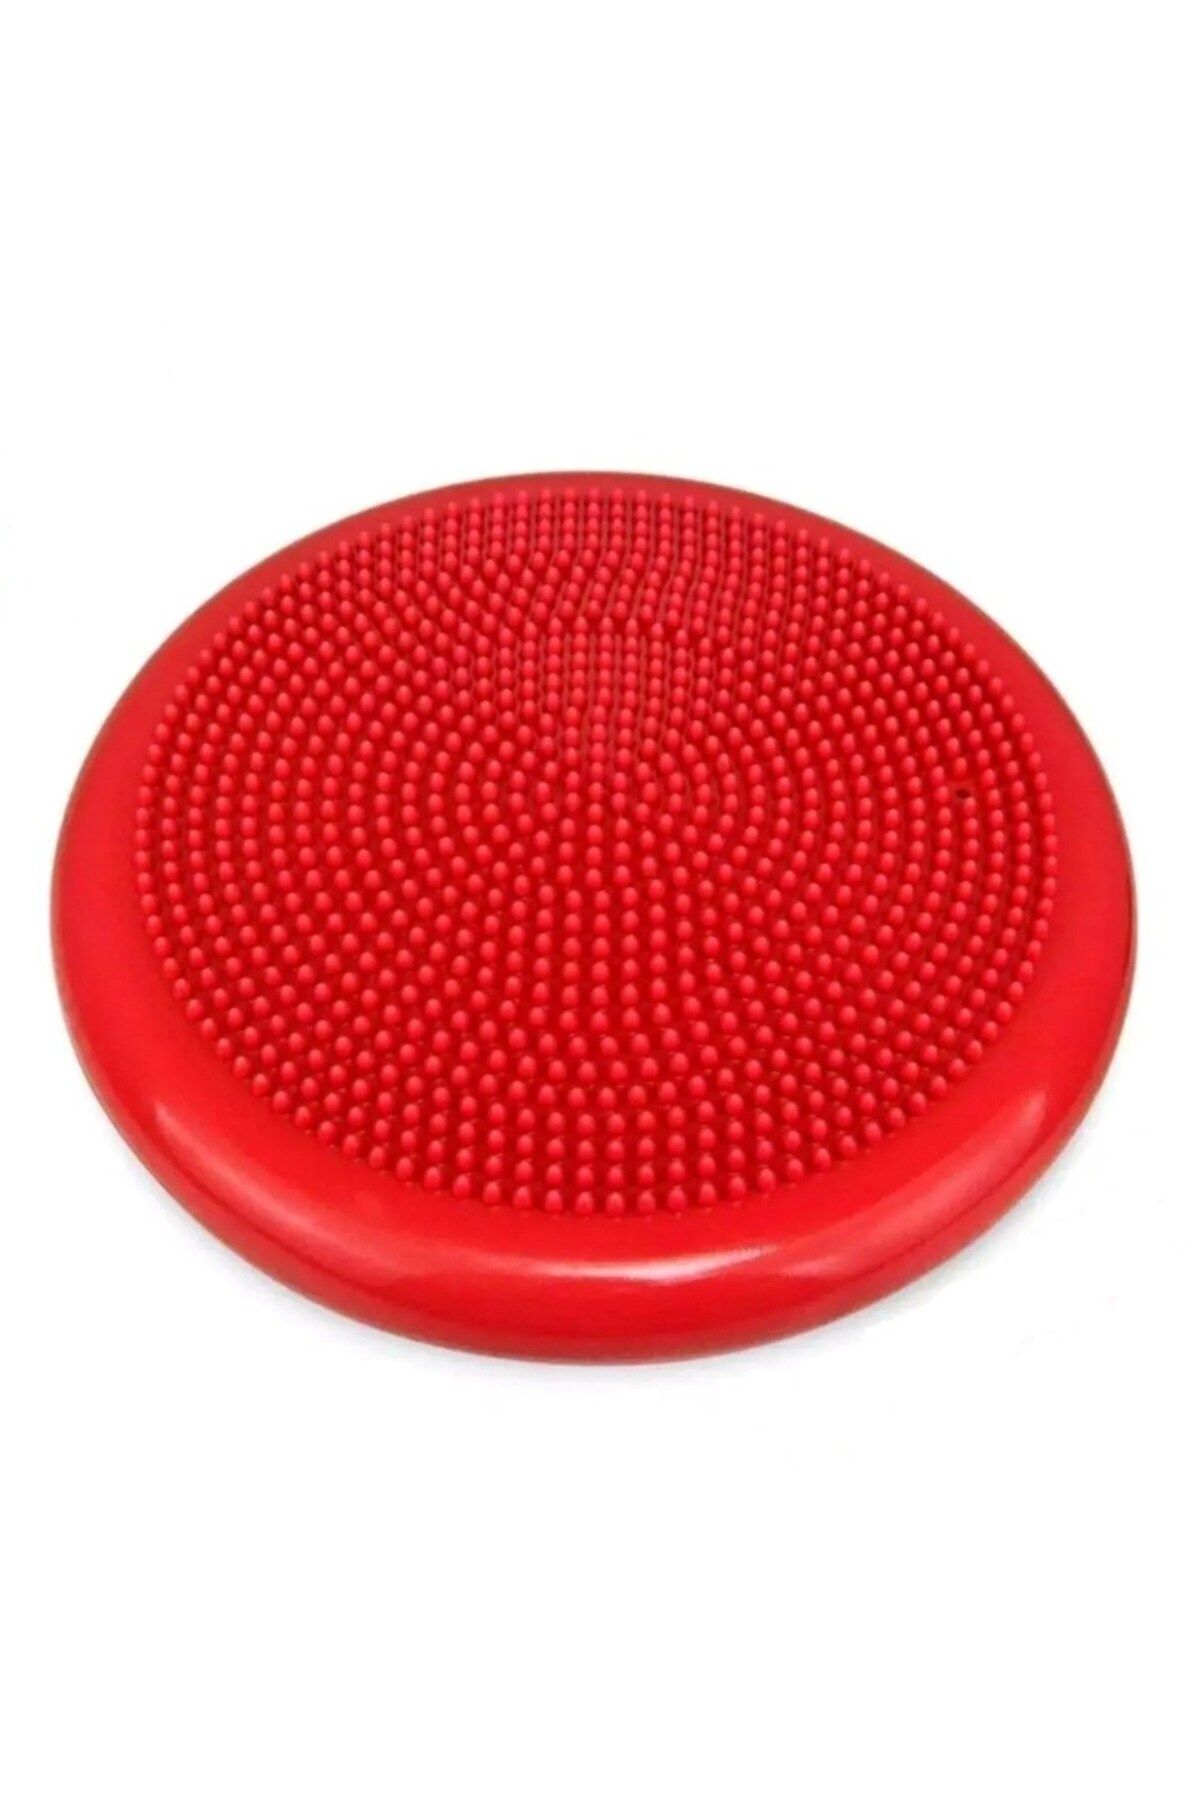 Gymo Pompalı Denge Yastığı Balance Disk Denge Pedi 33cm Fiyatı